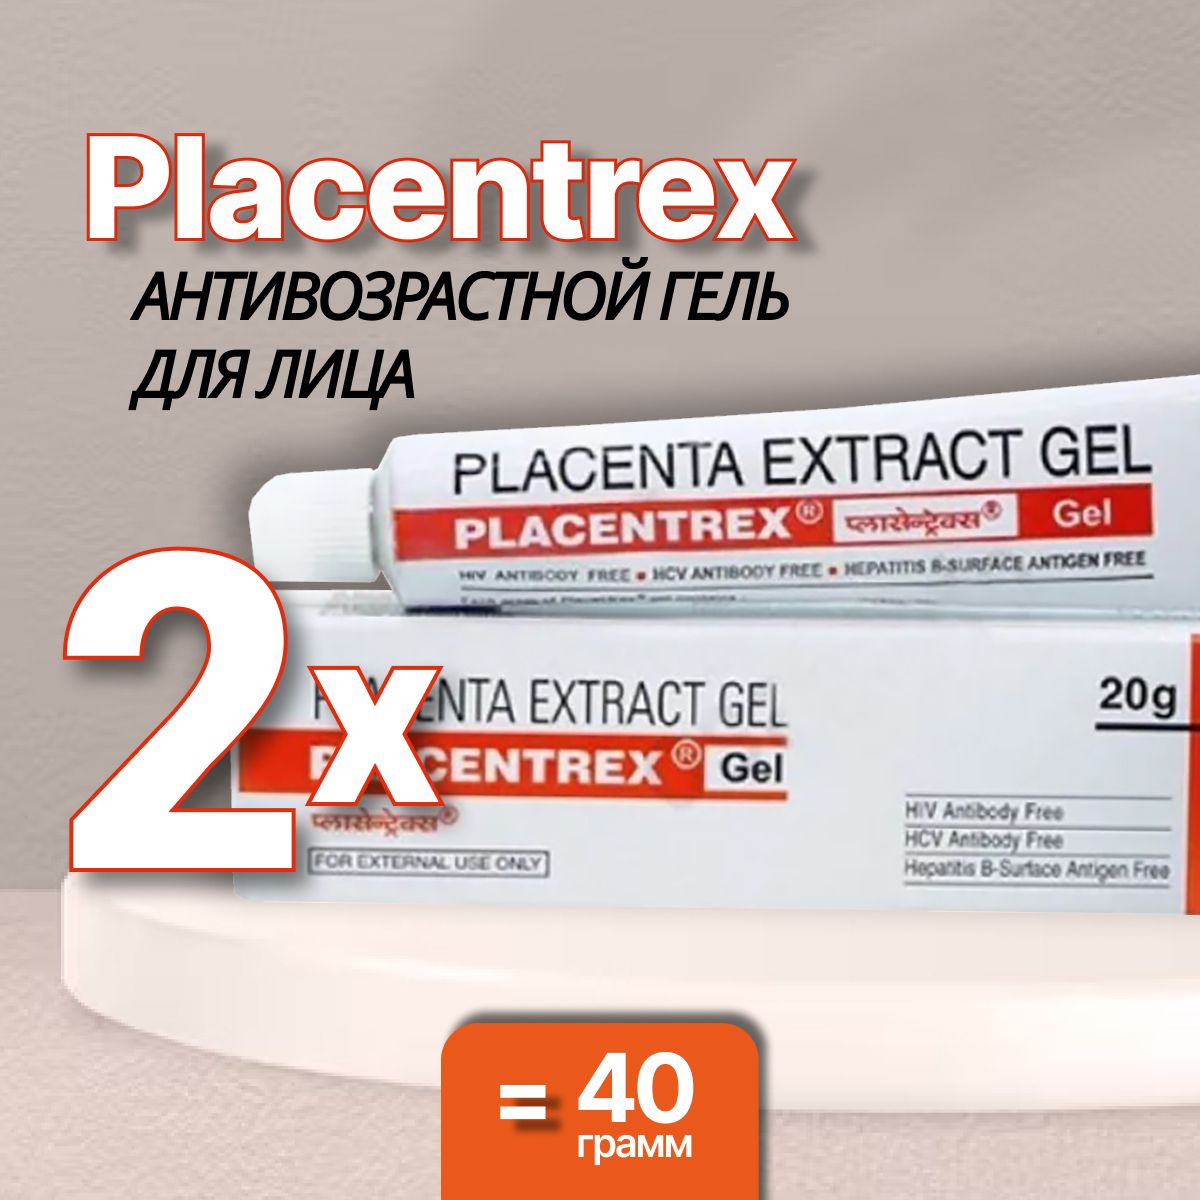 Albert David Placentrex placenta extract Gel гель Плацентрекс для лица. Плацентрекс с плацентой Placentrex extract Gel. Placentrex Cream. Плацентрекс крем инструкция. Плацентрекс placentrex gel